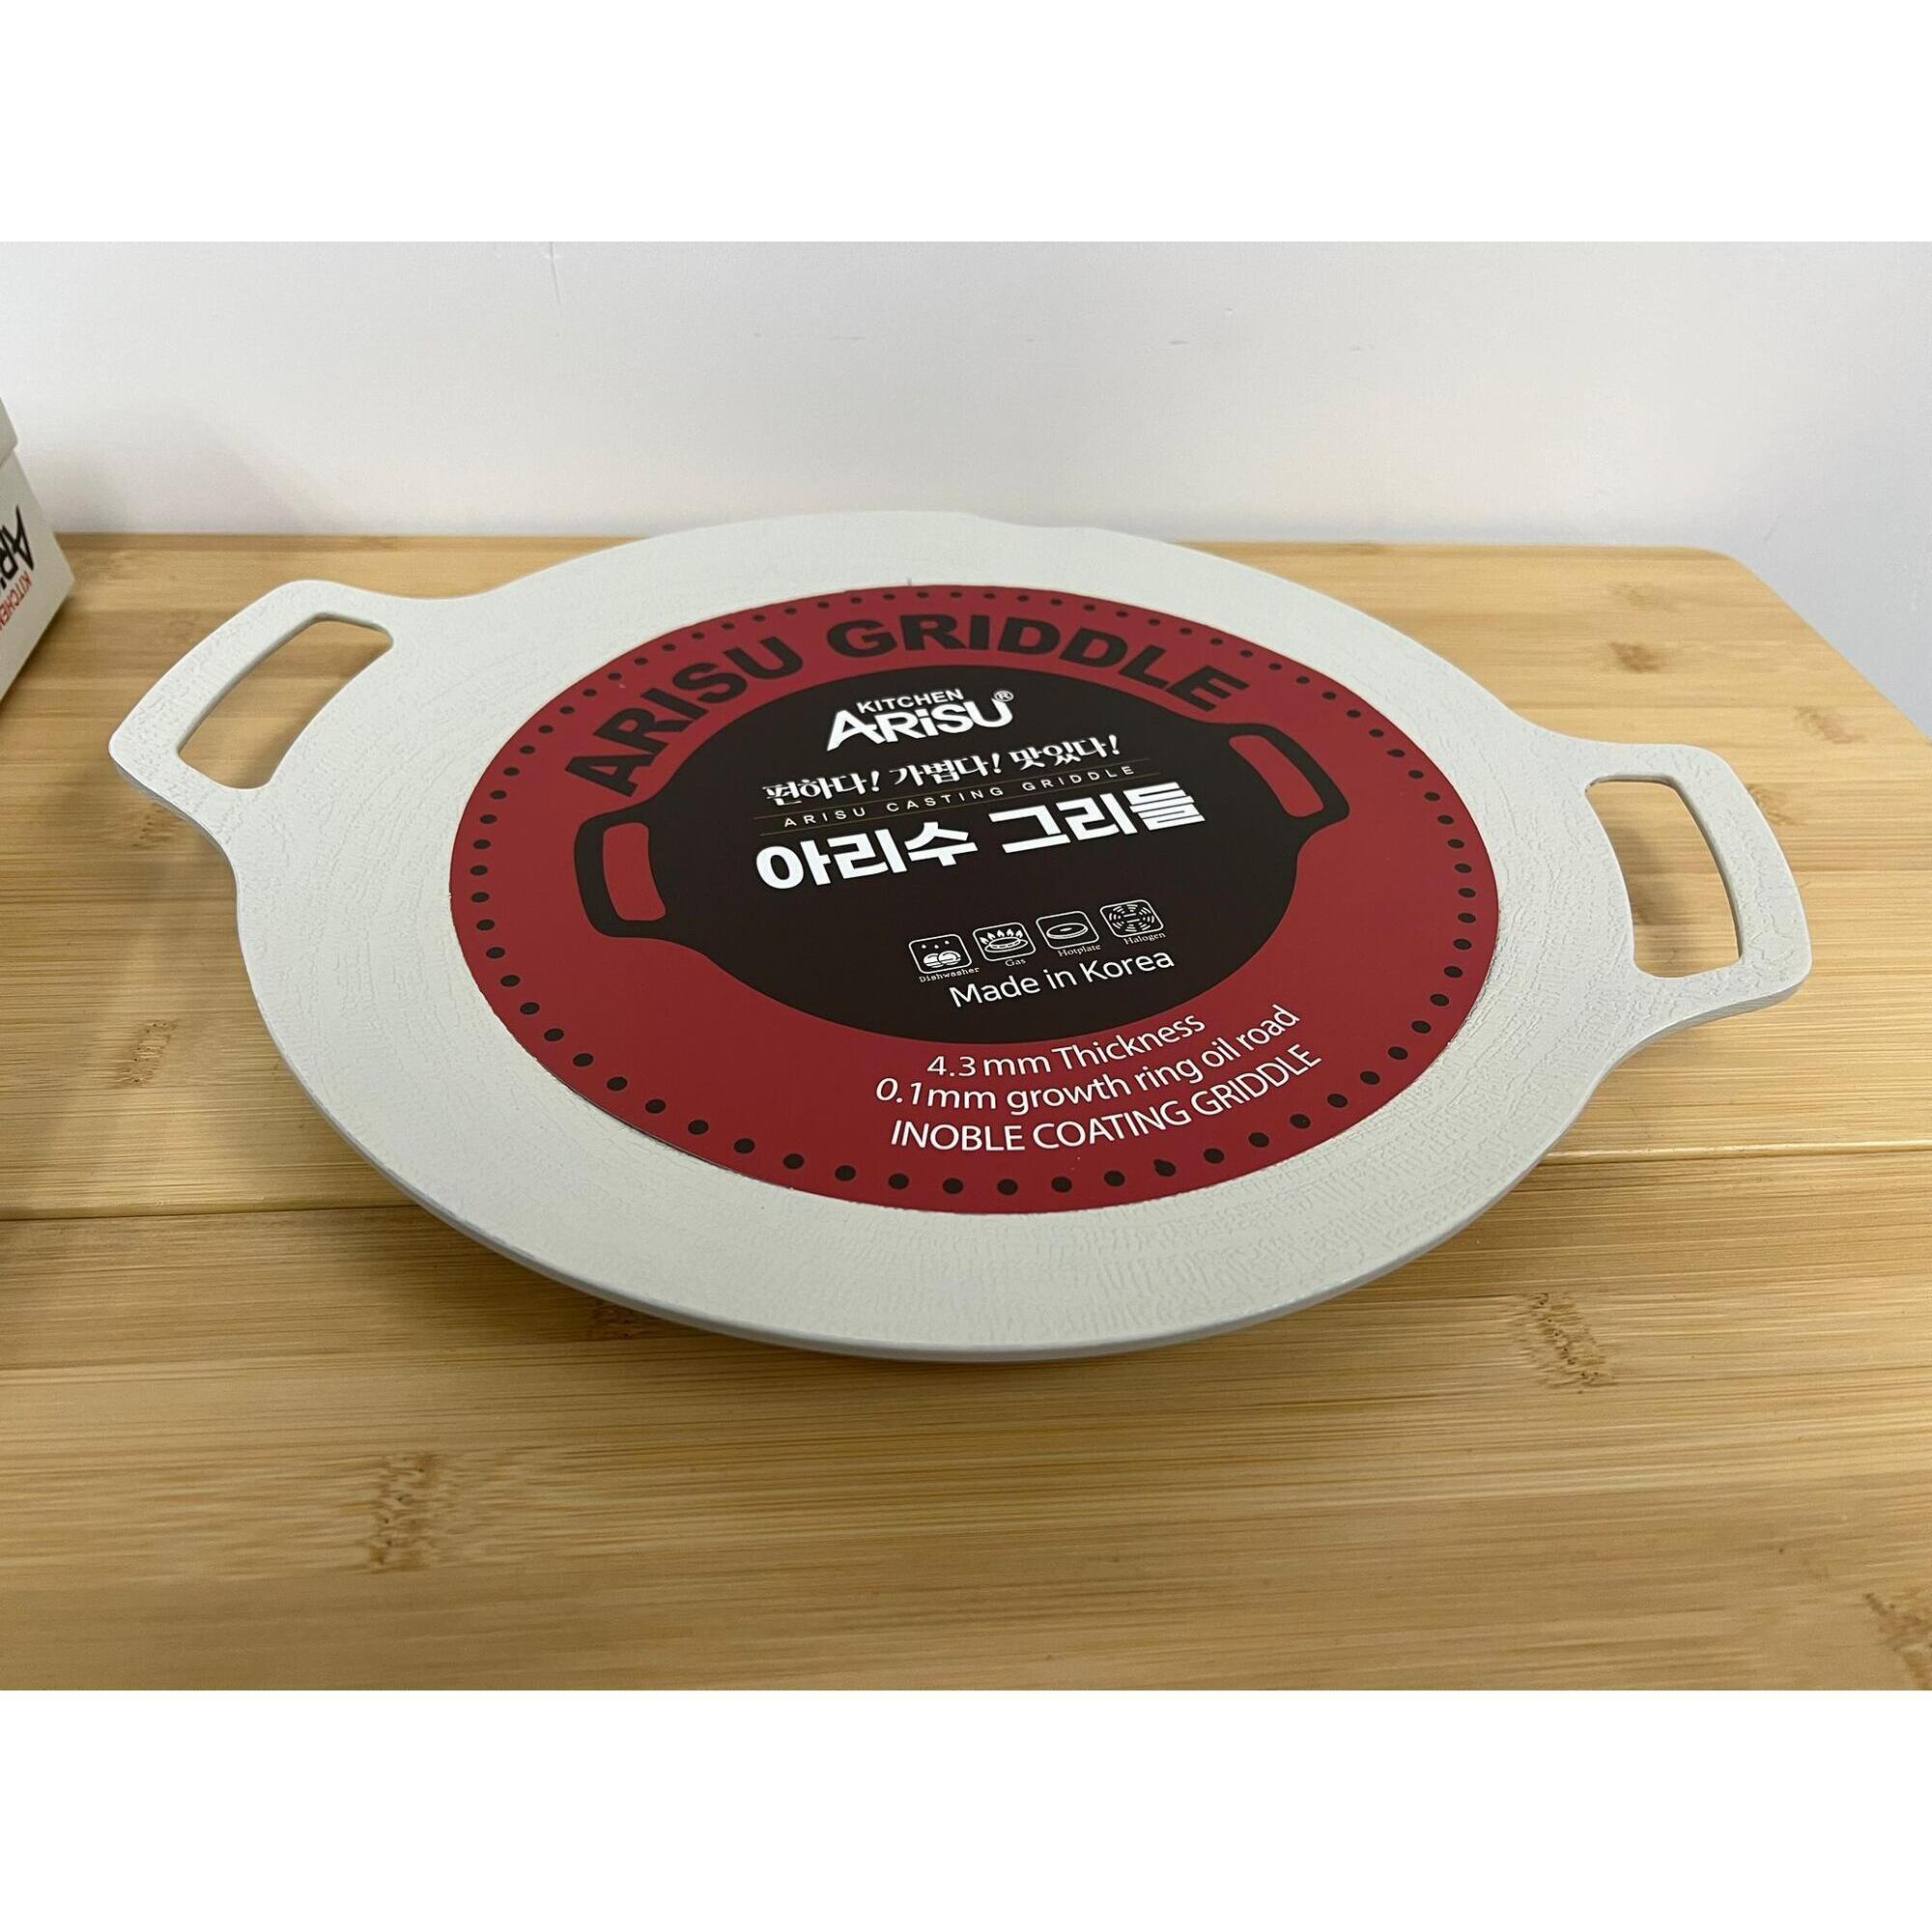 韓國易潔燒年輪烤盤29CM (電磁爐適用) - 白色- DECATHLON